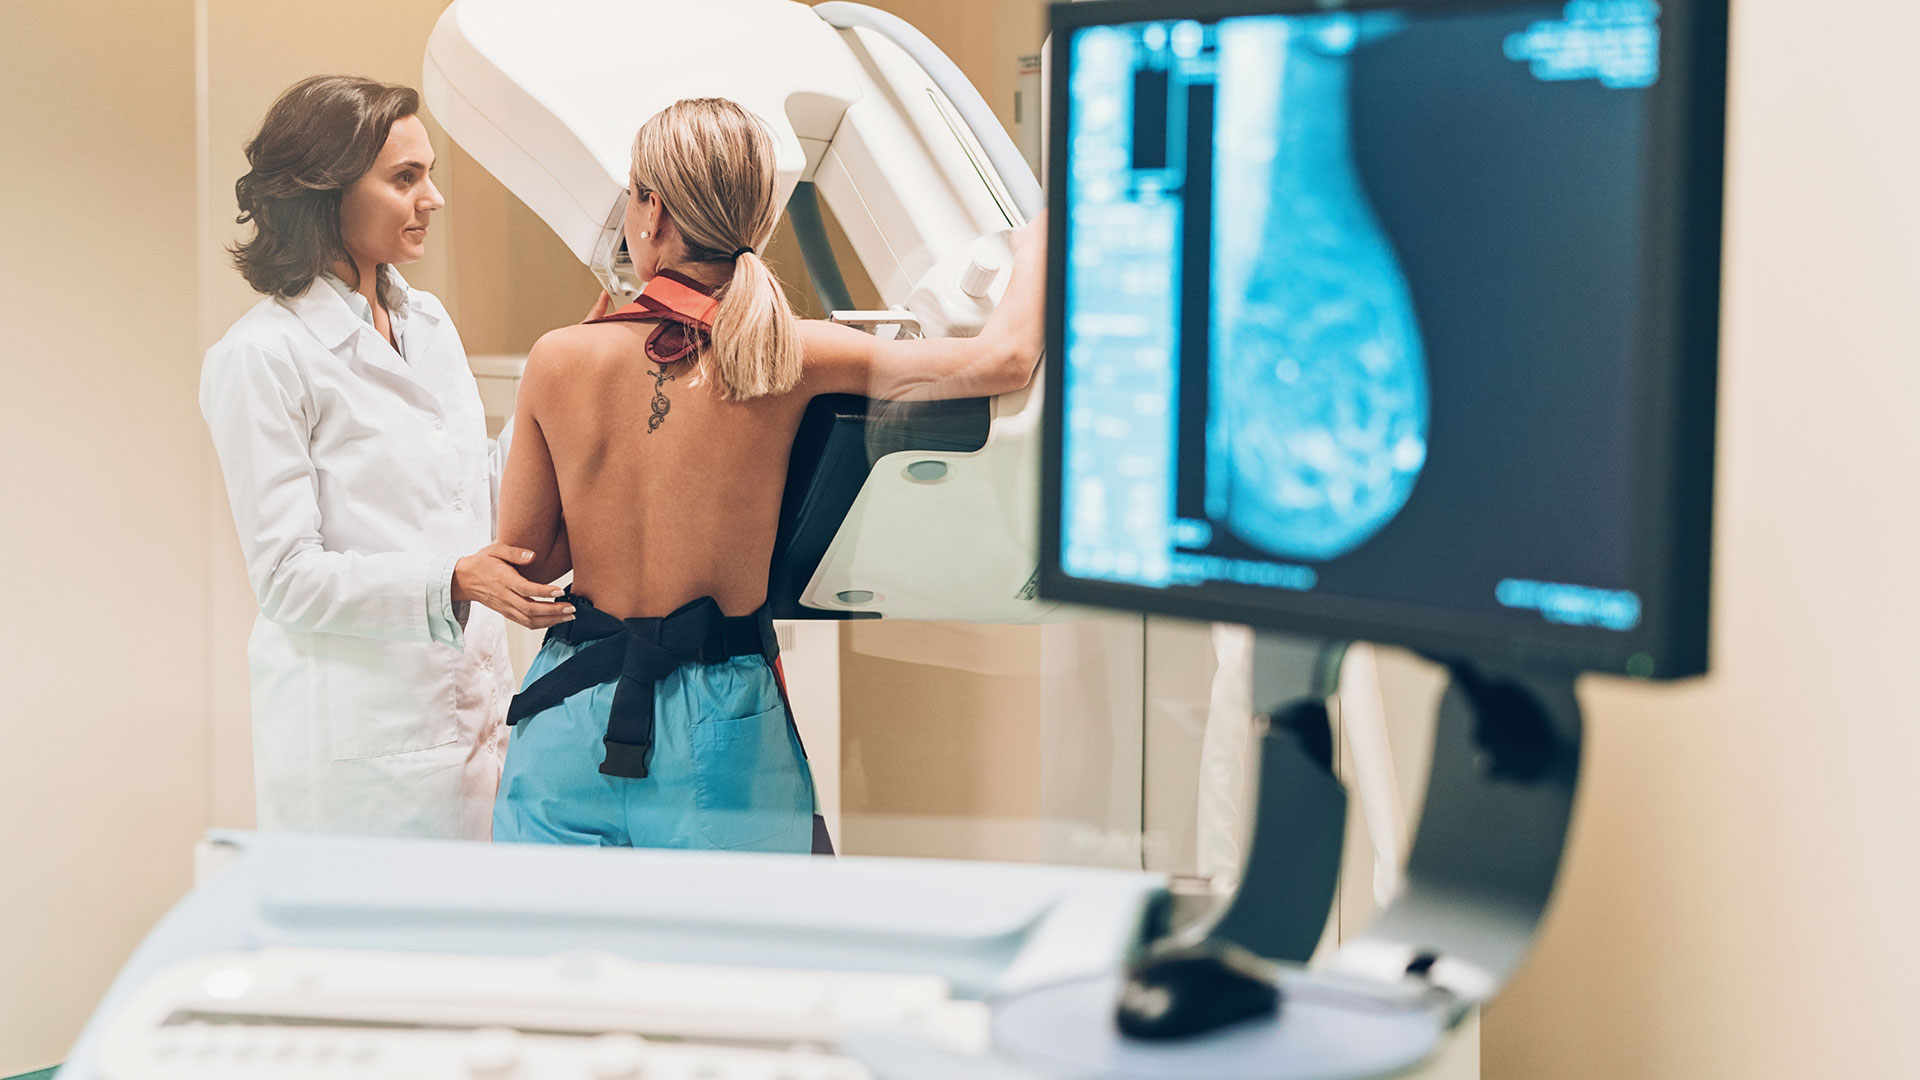 La mamografía los especialistas la están recomendando a partir de los 40 años (Gettyimages)